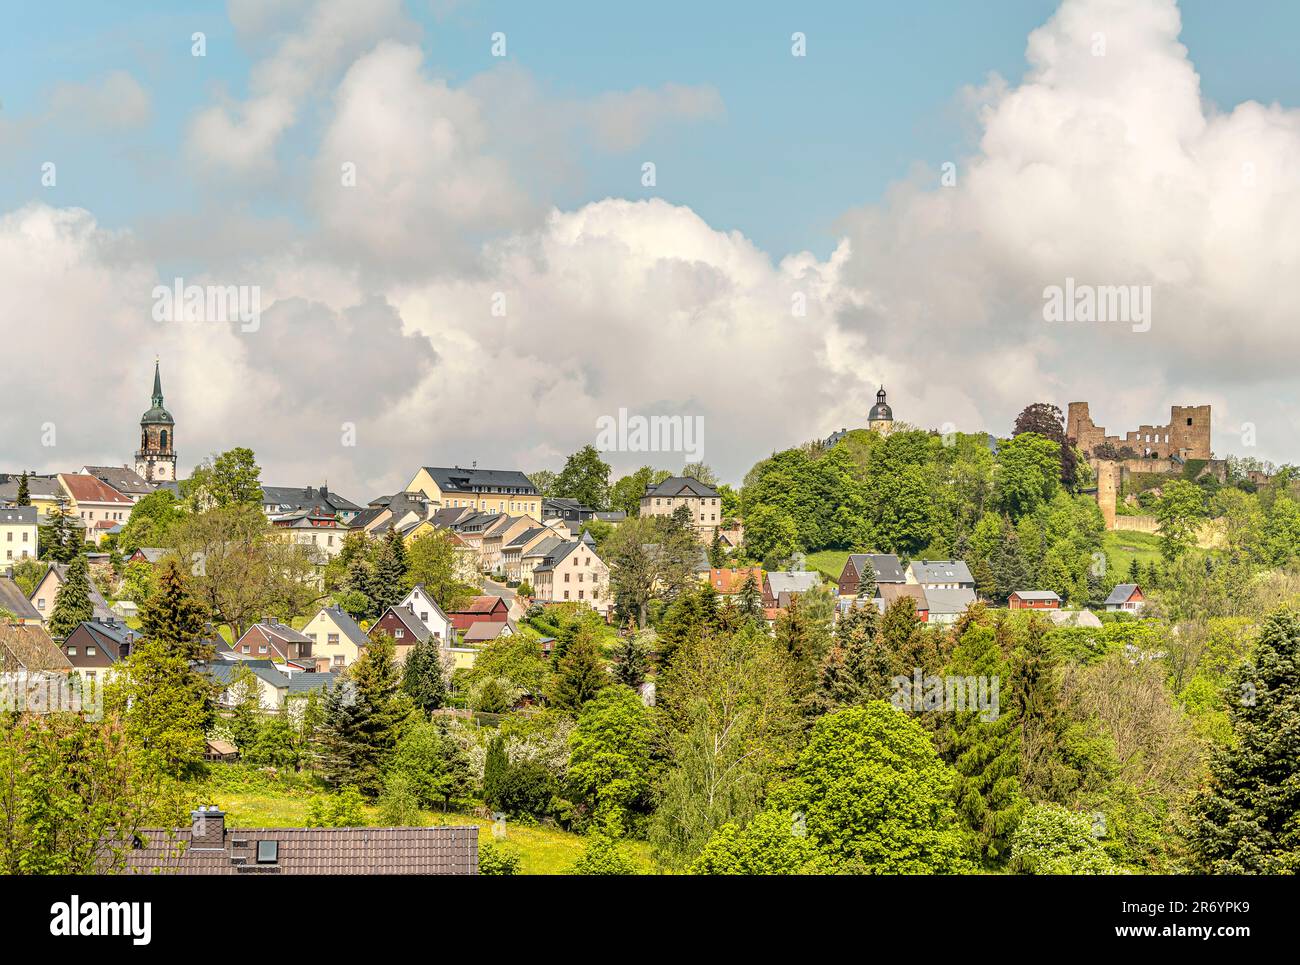 Dorf und Schloss Frauenstein im östlichen Erzgebirge, Sachsen, Deutschland Stockfoto